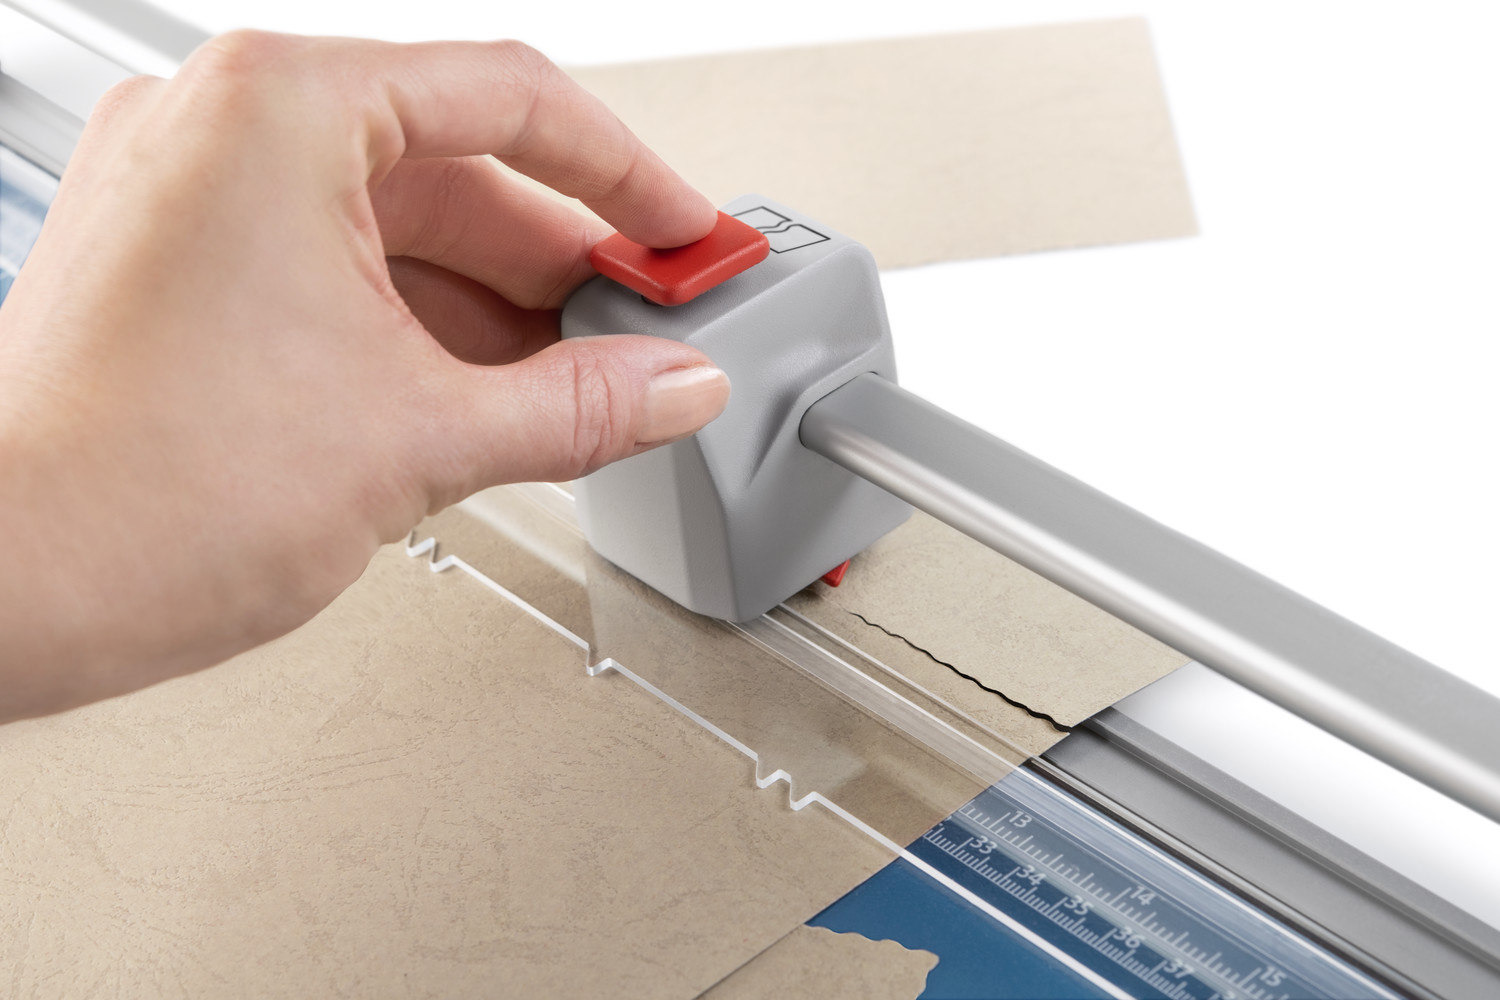 Bądź kreatywny: własnoręcznie wykonane kartki można łatwo udoskonalić cięciem, które nadaje charakterystyczny wygląd papieru czerpanego